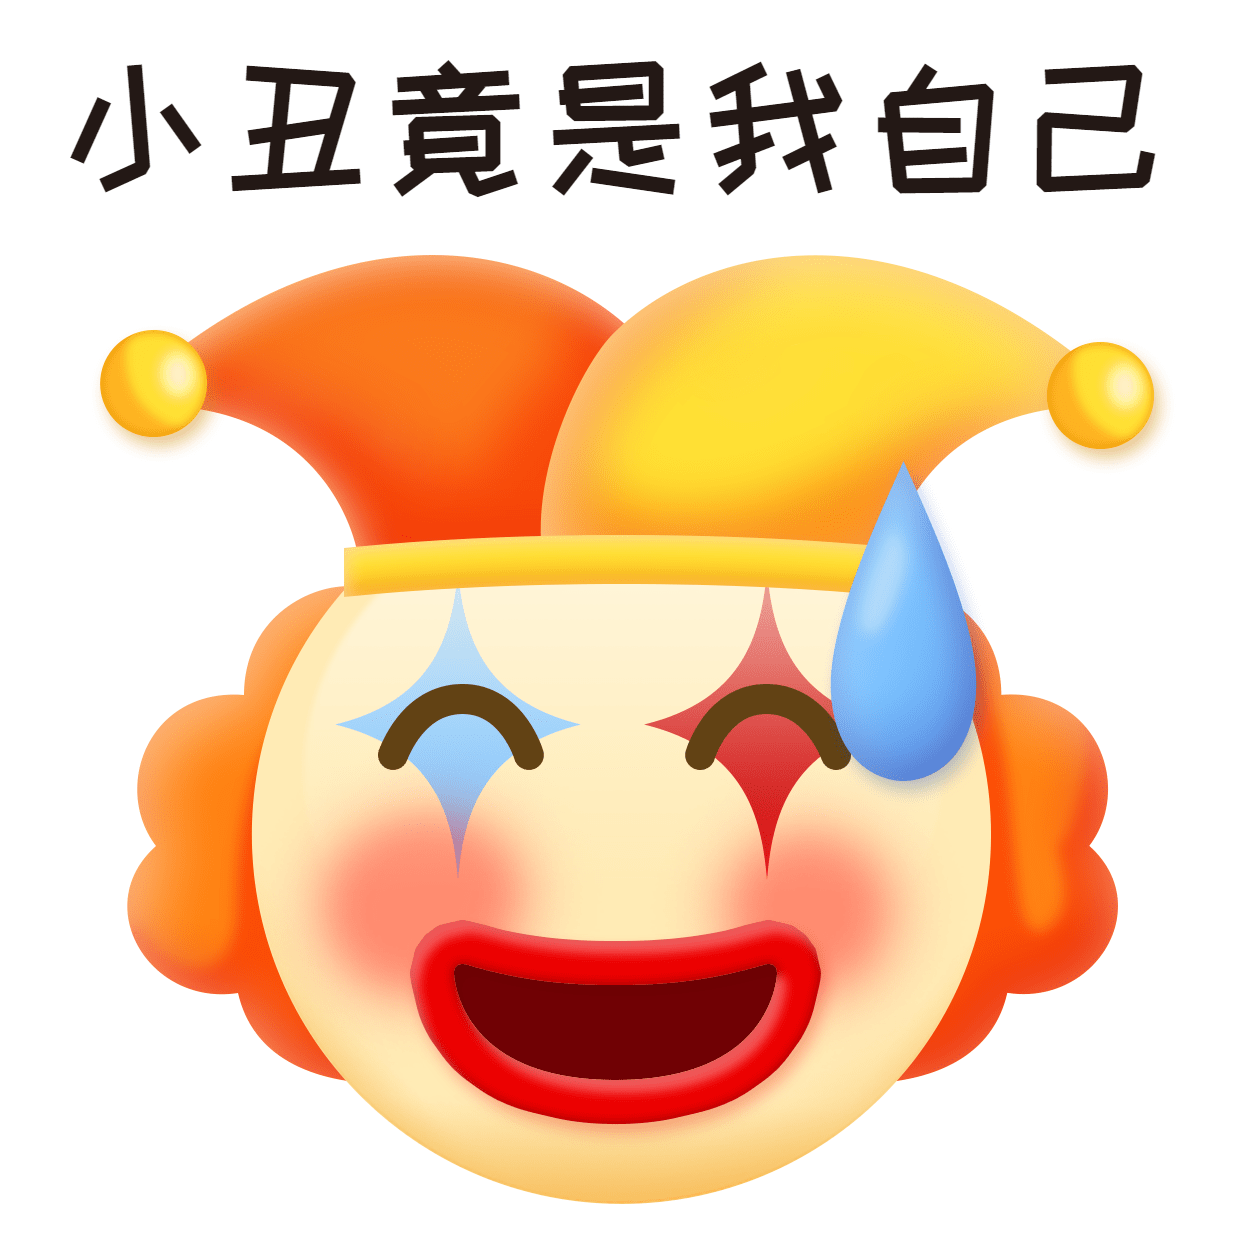 趣味小丑emoji头像表情包预览效果